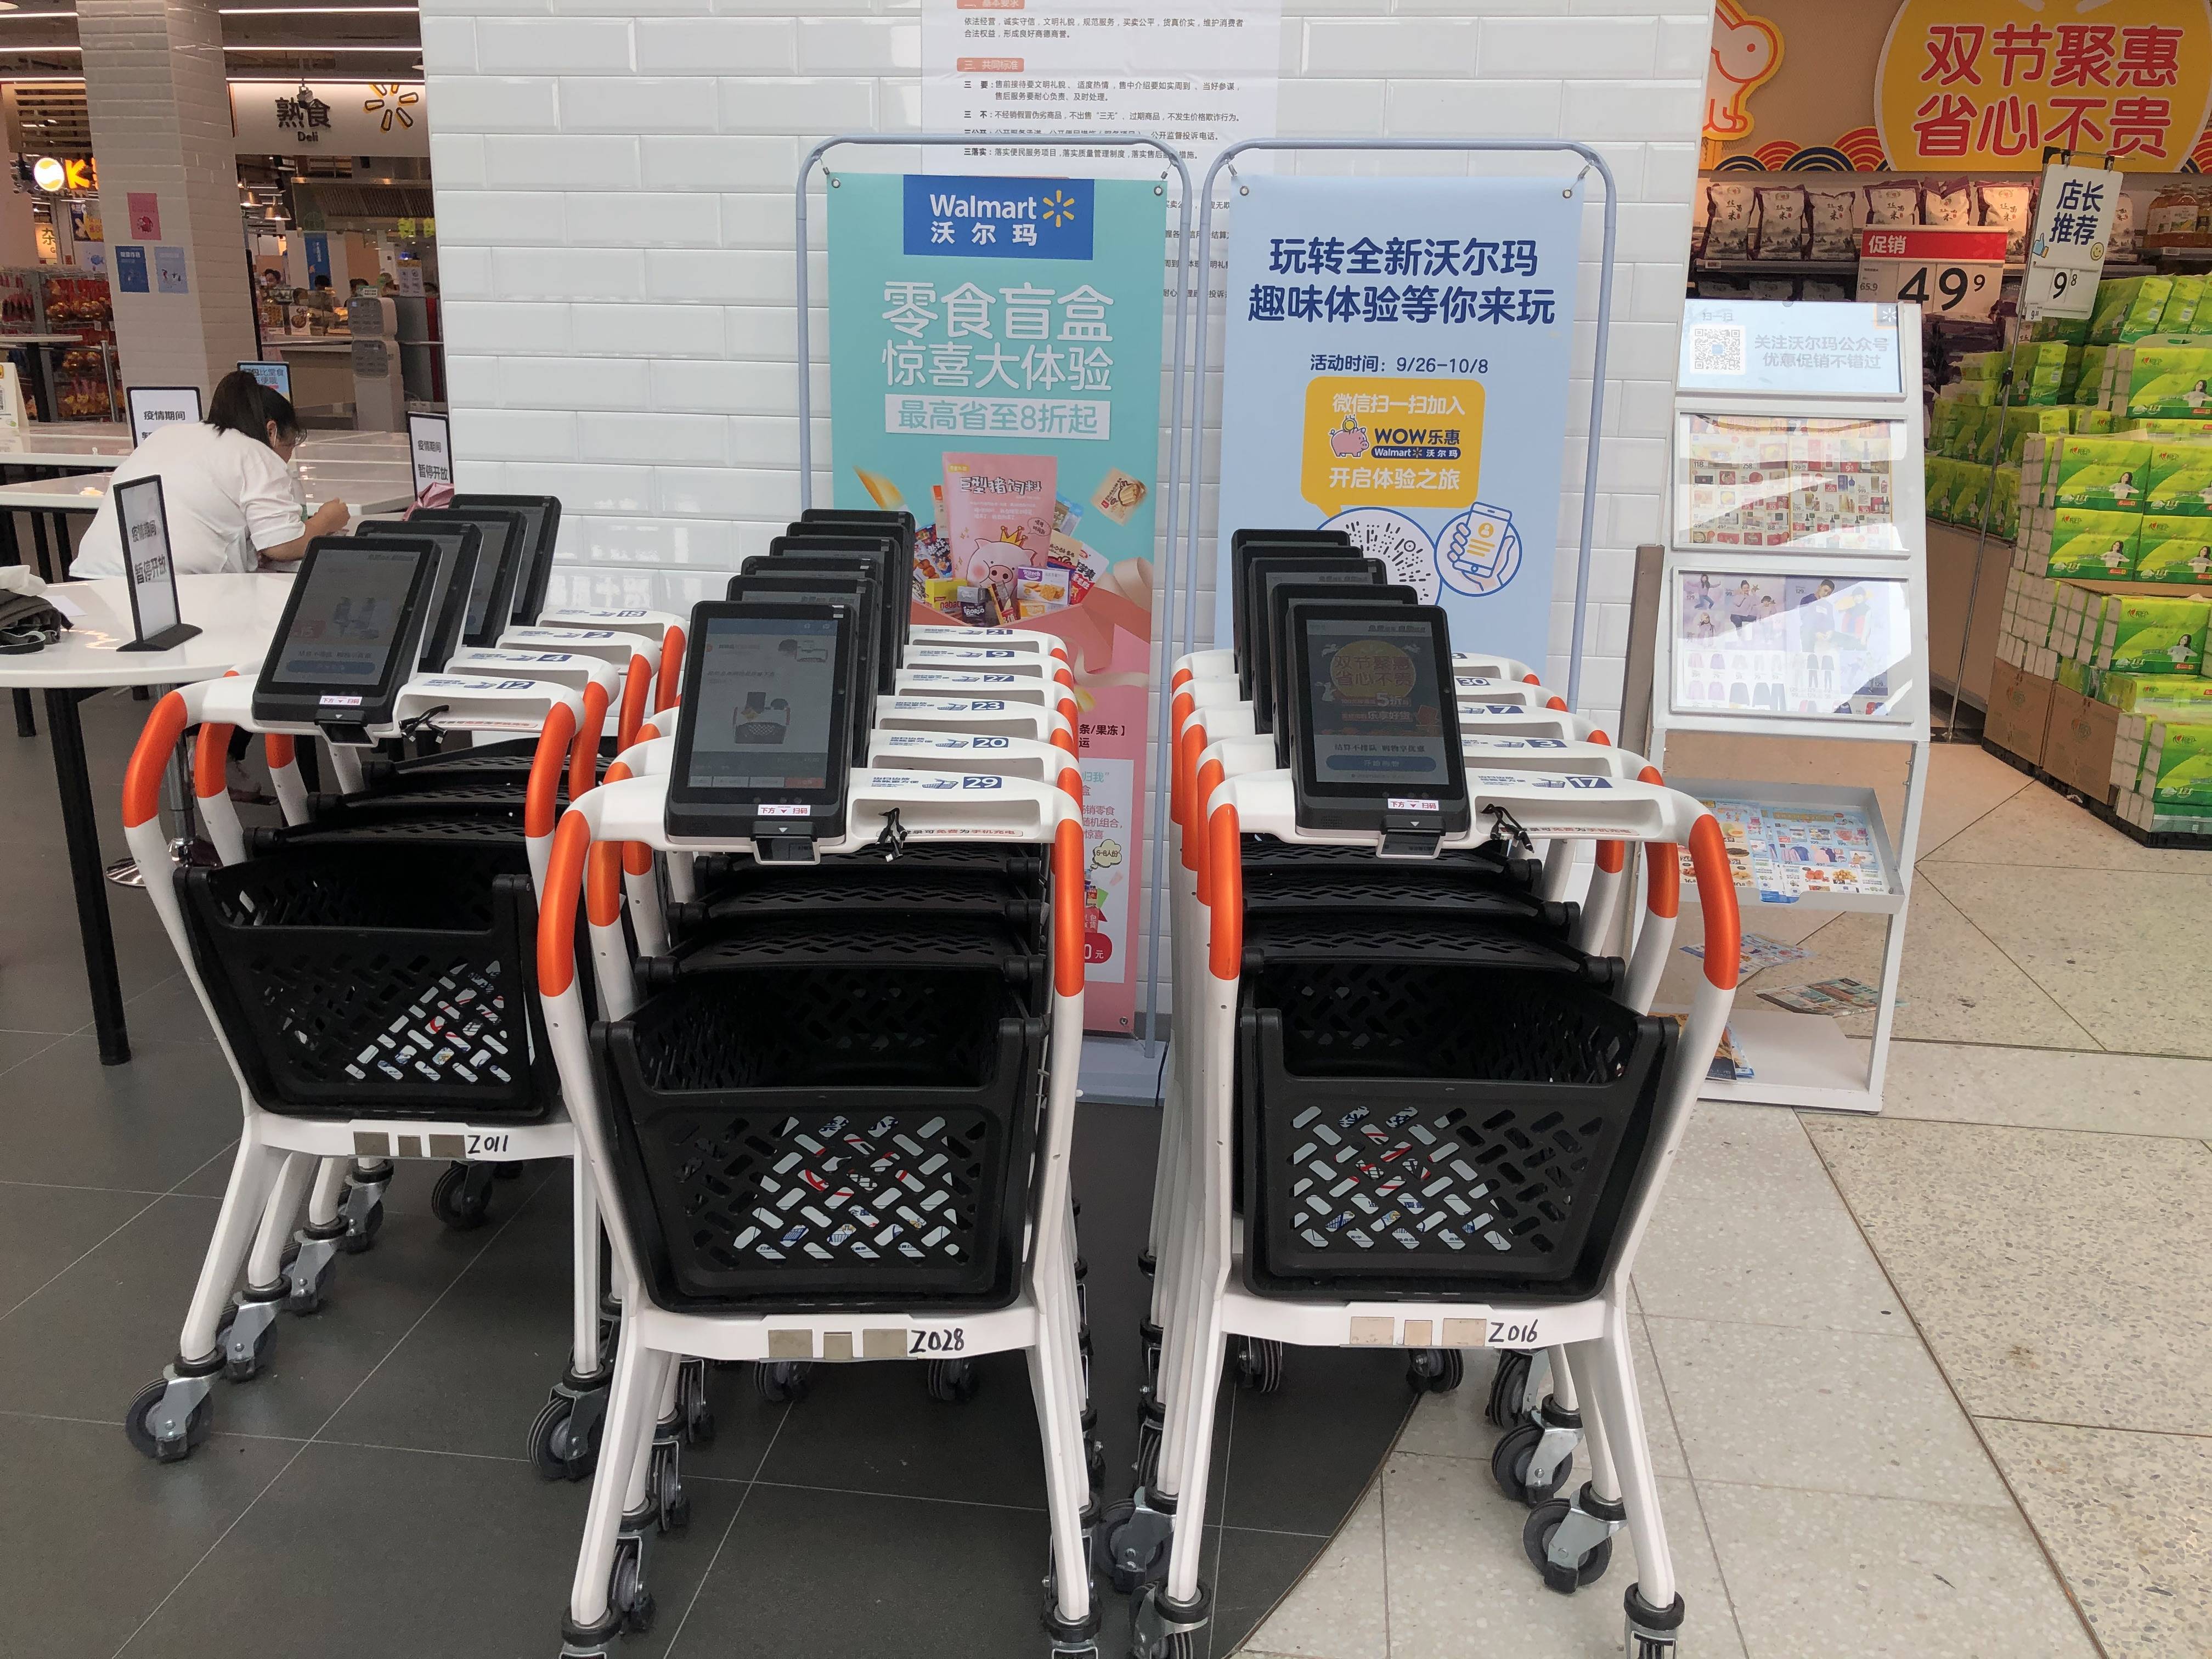 沃尔玛深圳门店升级新开为啥选中了超嗨智能购物车